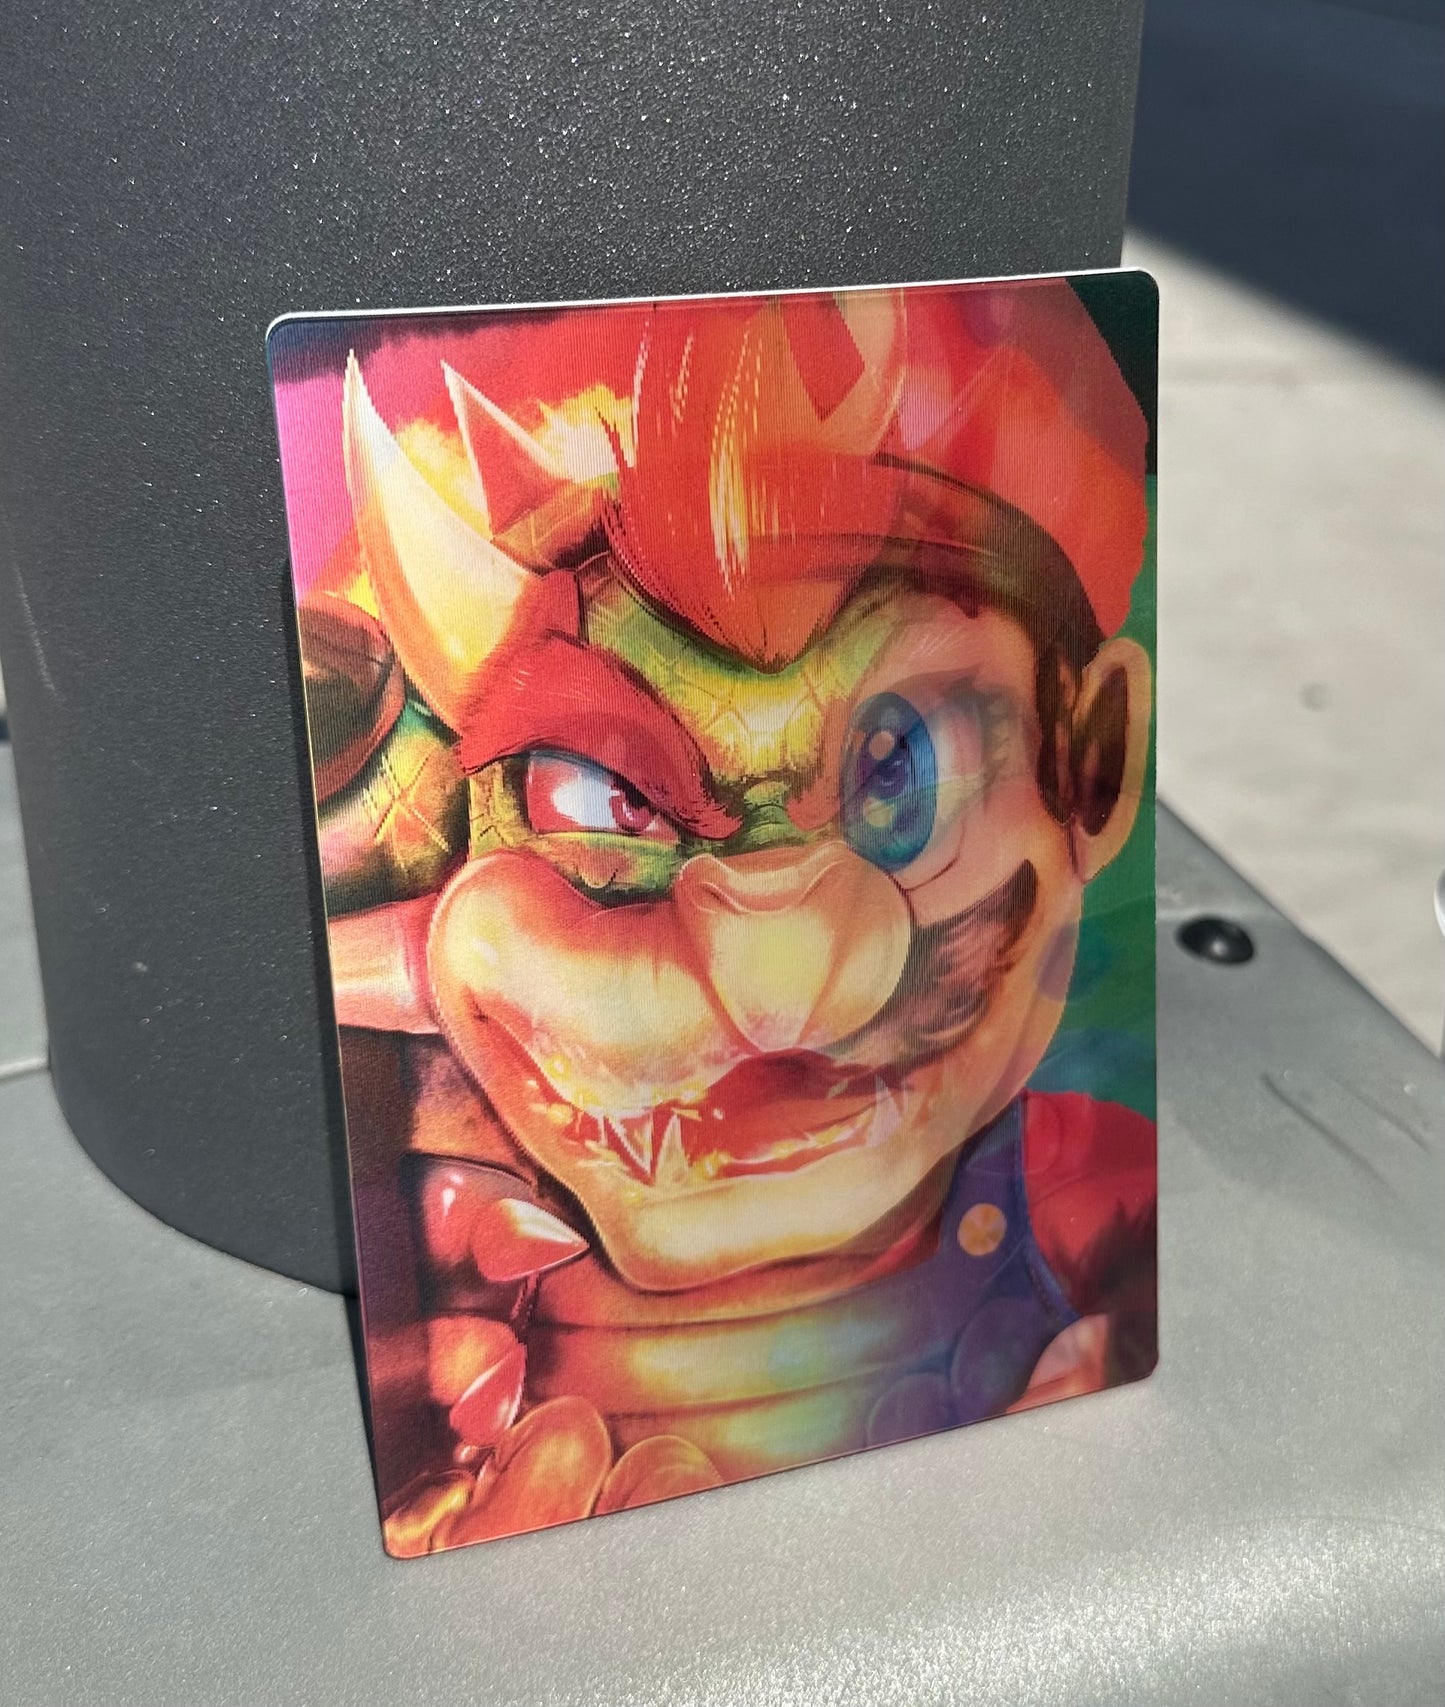 Mario Princess Peach Bowser 3D Sticker Decal